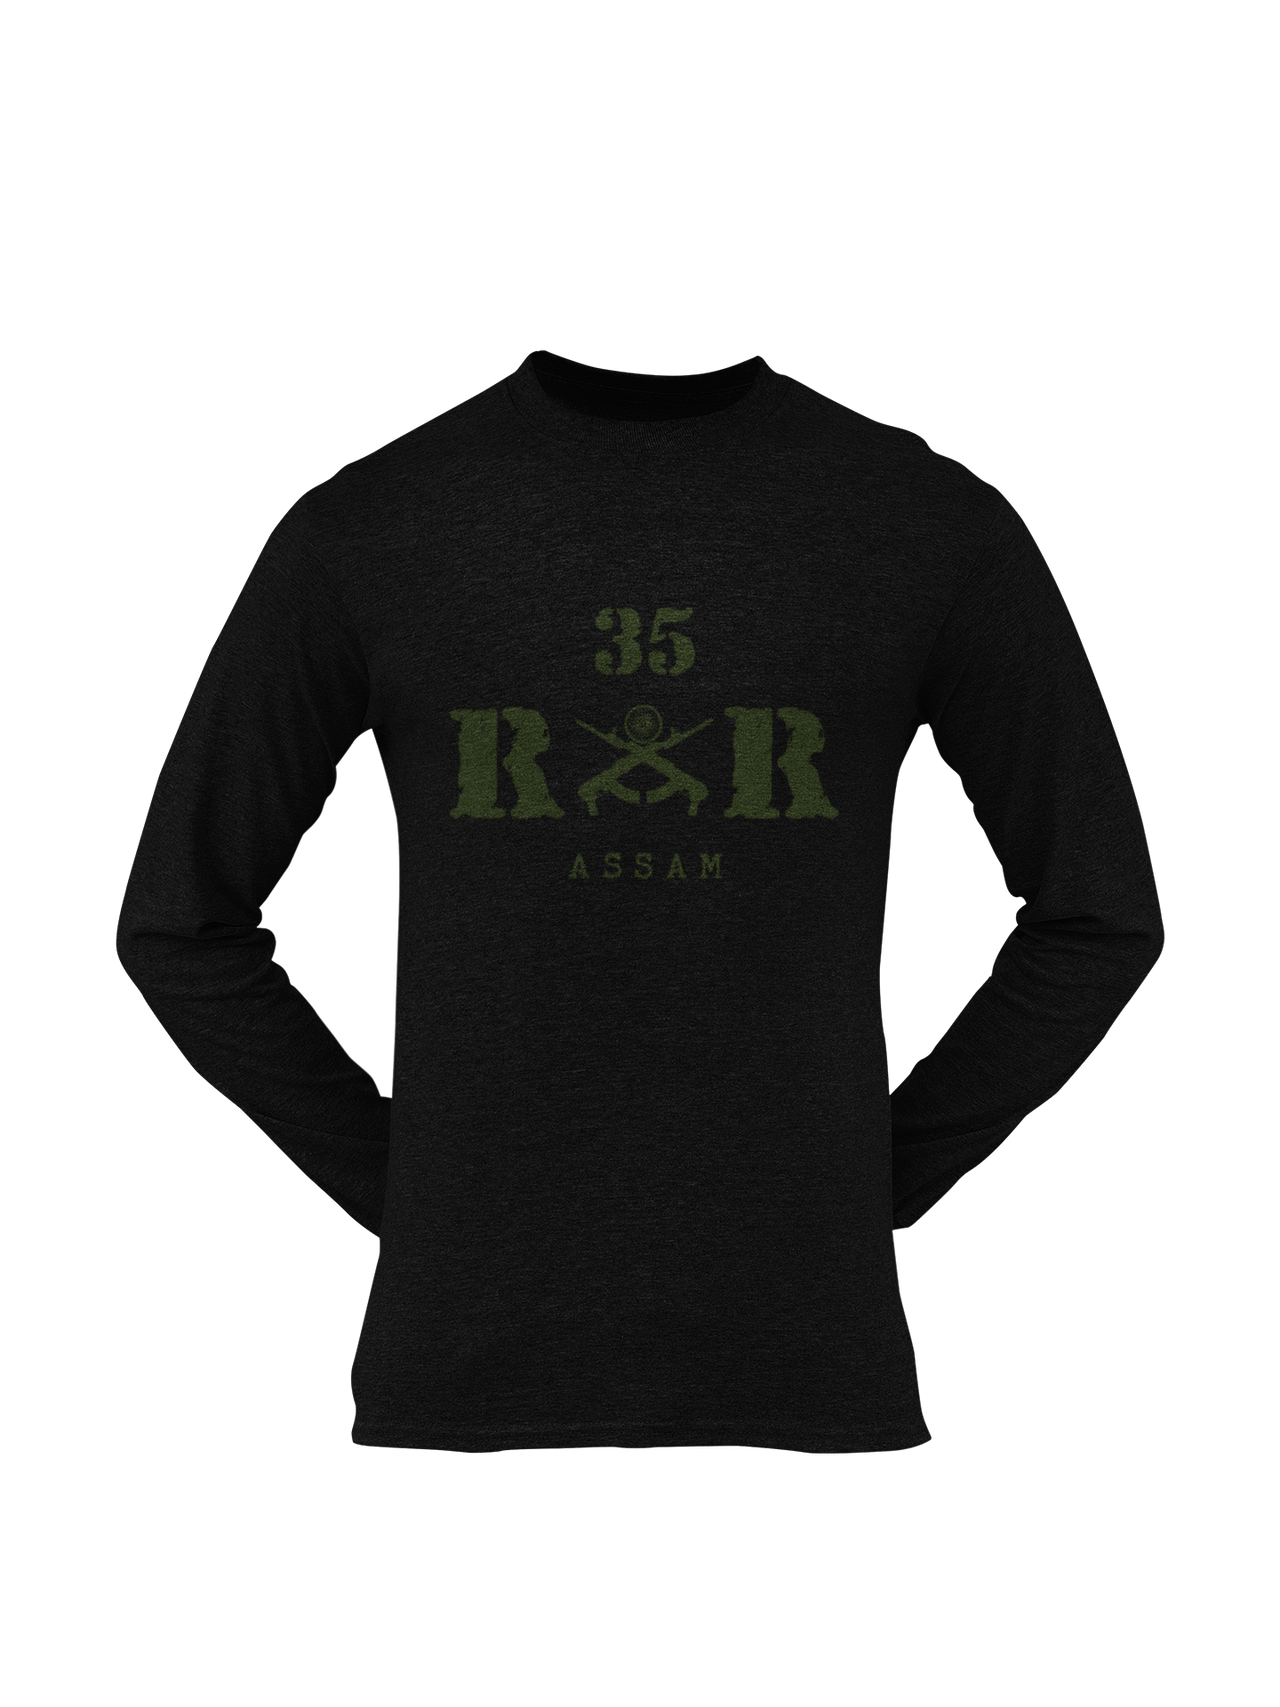 Rashtriya Rifles T-shirt - 35 RR Assam (Men)